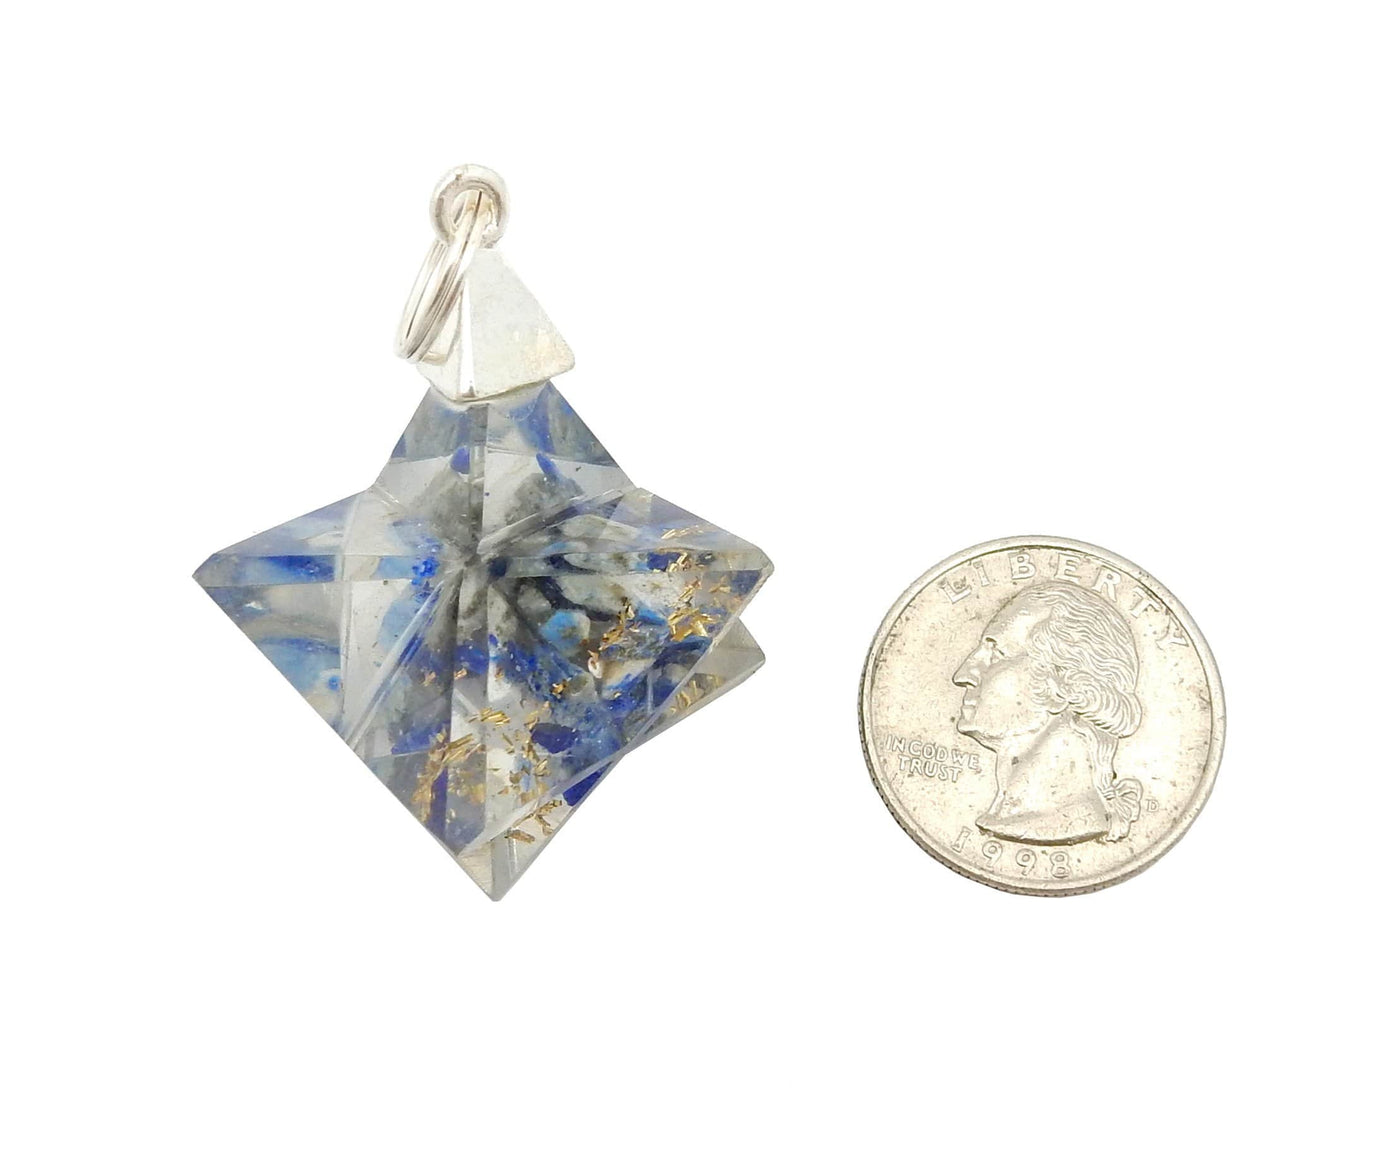 one merkaba star pendant next to a quarter